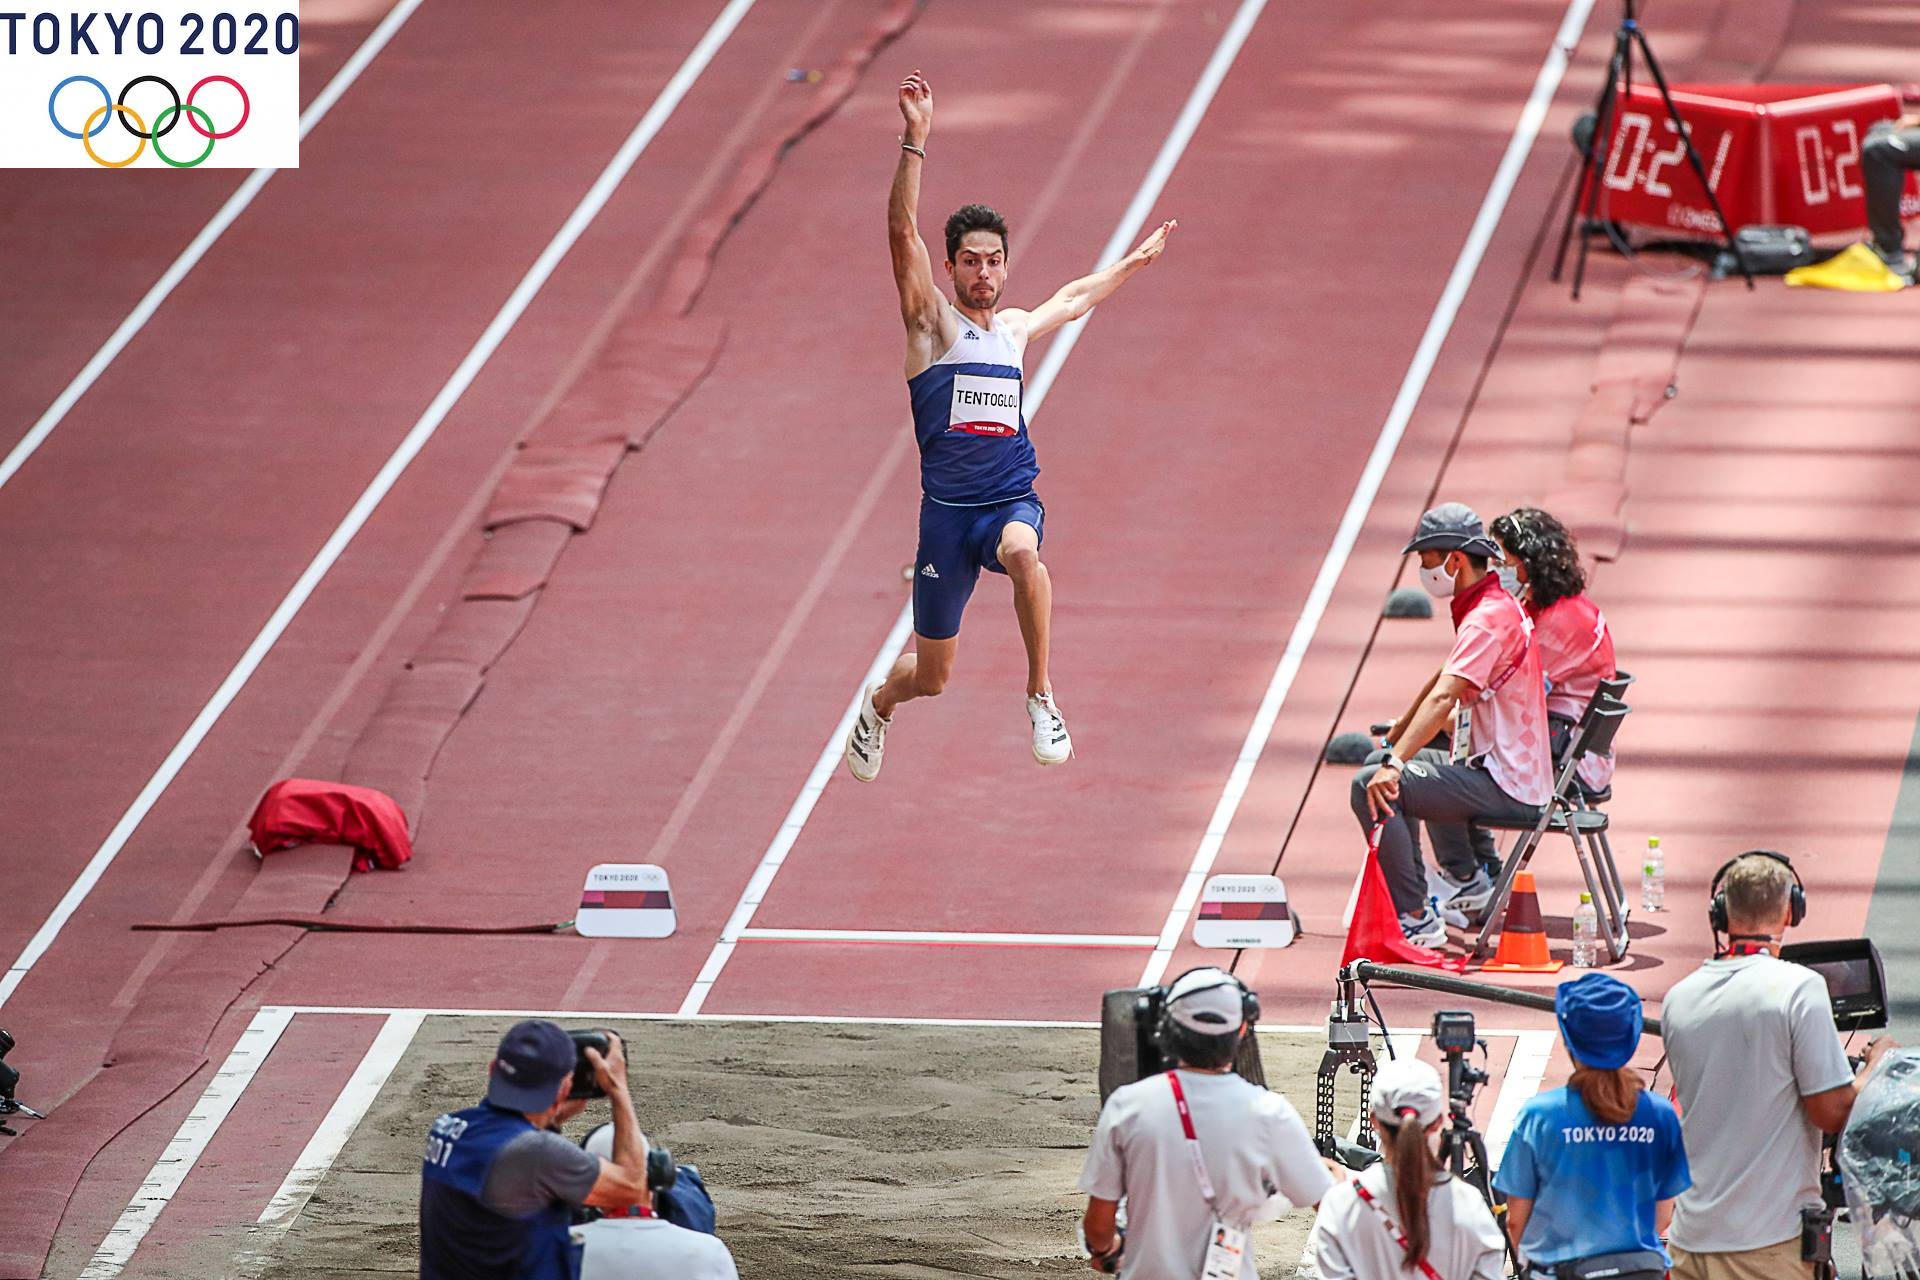 Μίλτος Τεντόγλου το δεύτερο χρυσό μετάλλιο στος Ολυμπιακούς Αγώνες του Τόκιο